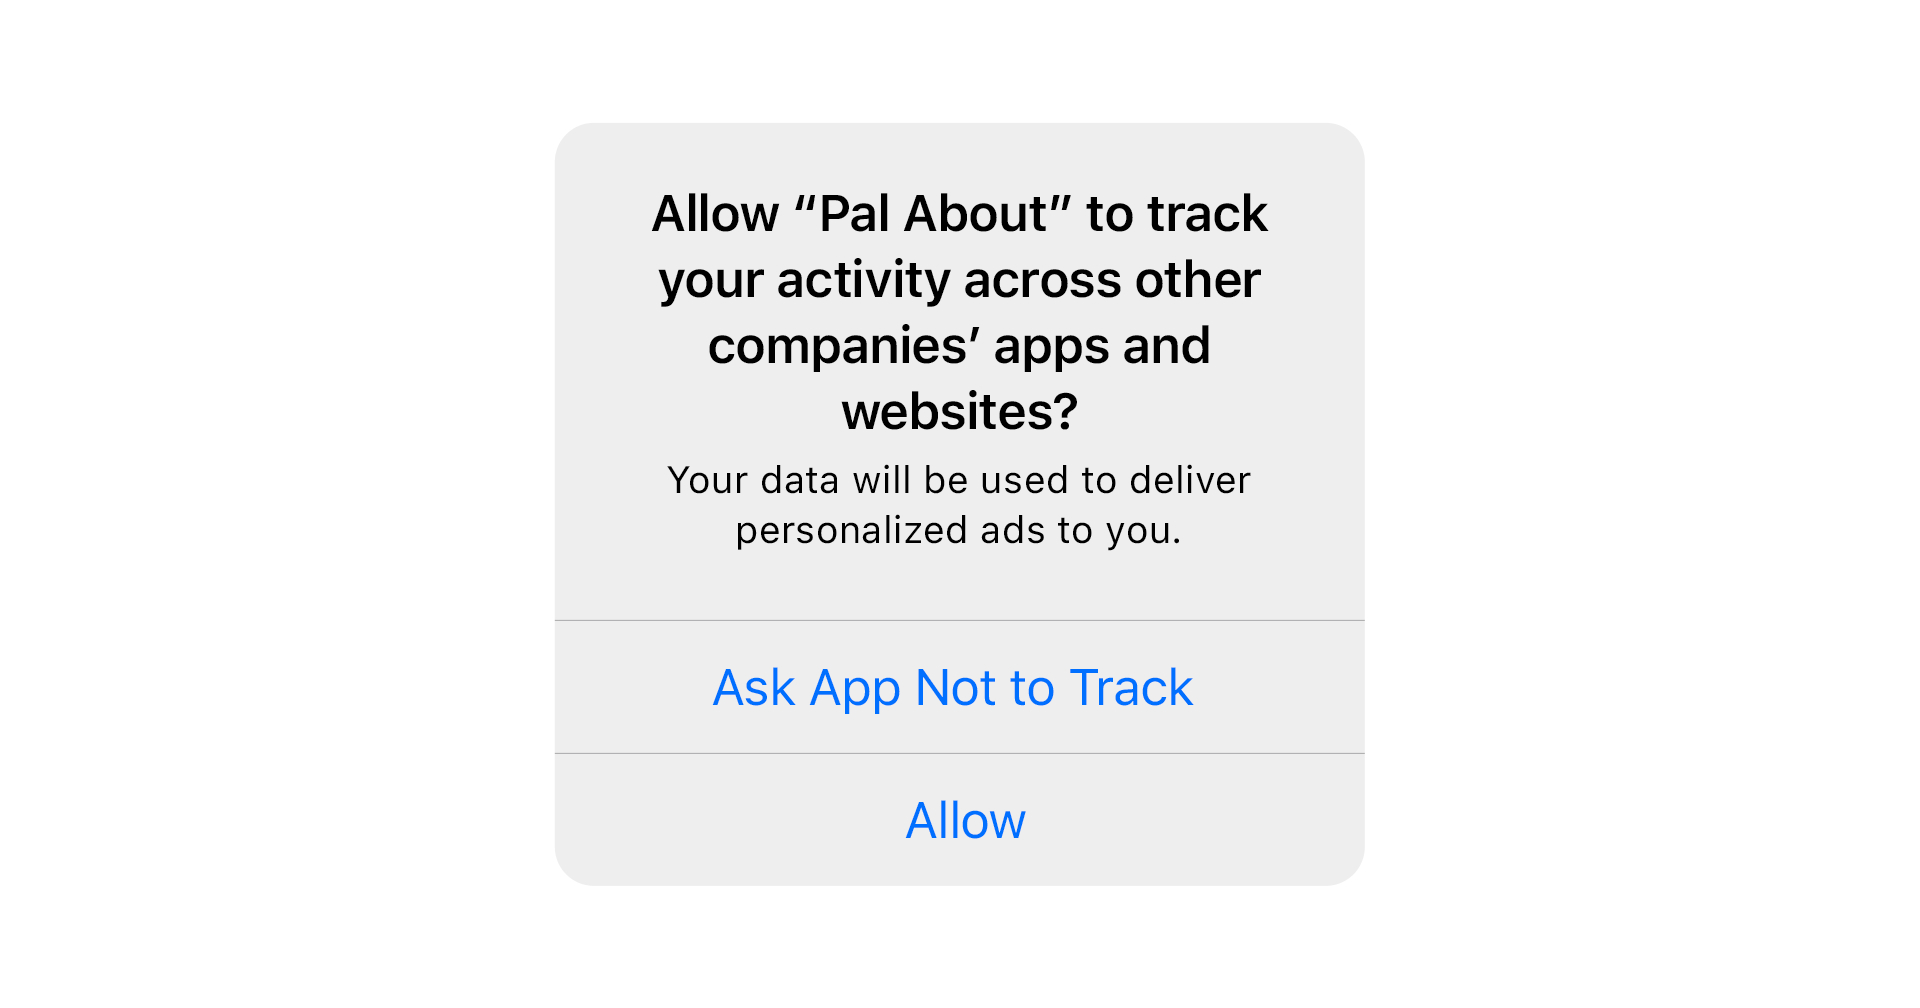 ATT ทำพิษ!! นักโฆษณาเปลี่ยนไปลงทุนกับ Android มากขึ้น หลัง iOS ต้องให้แอปขออนุญาตผู้ใช้ก่อนติดตาม